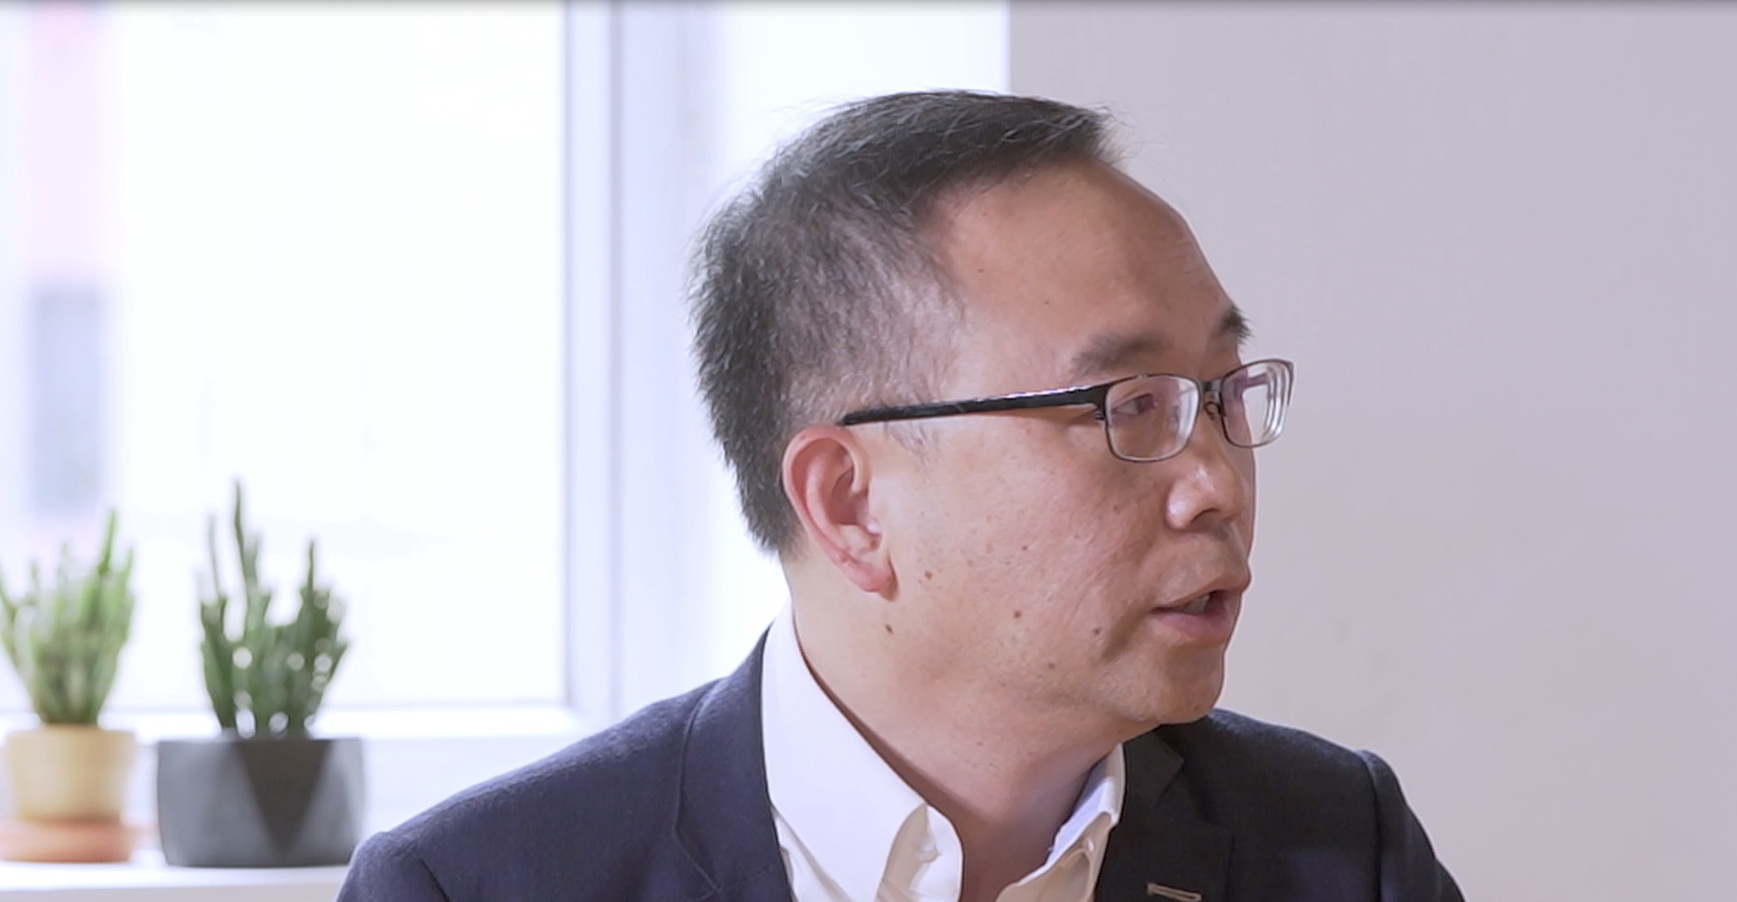 滙豐香港工商金融中小企業主管陳慶耀說滙豐聆聽很多客戶心聲，並且了解他們的痛點，因此一直想方法令他們可以用到最新的技術。